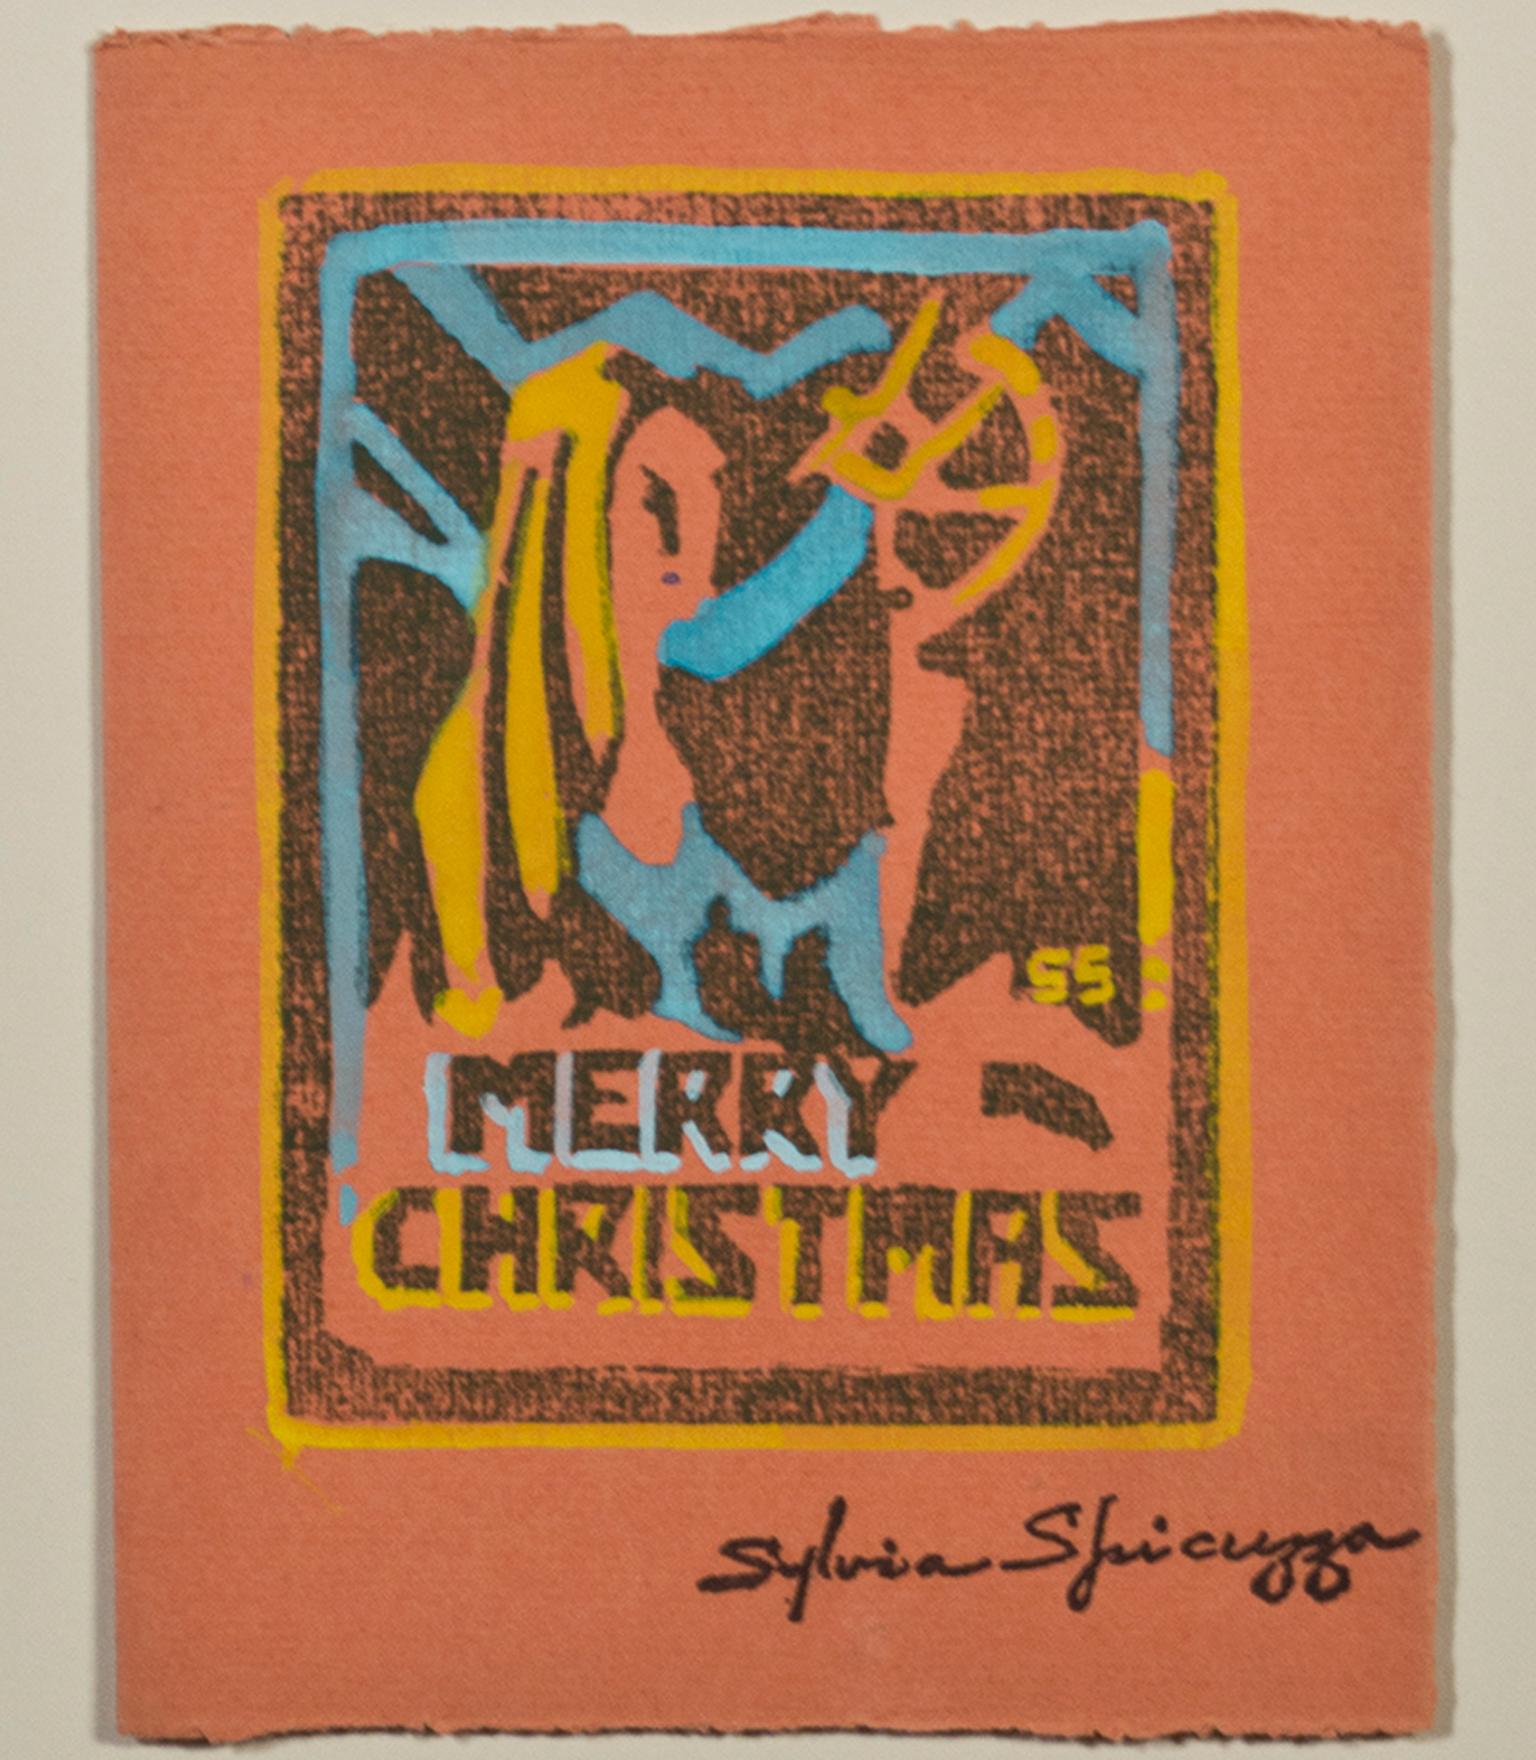 "Frohe Weihnachten" ist ein Original-Farbholzschnitt auf Papier von Sylvia Spicuzza.  Die Künstlerin hat ihre Signatur unten rechts aufgestempelt. Dieses Kunstwerk zeigt die  eine abstrahierte Figur auf orangefarbenem Papier mit gelben und blauen